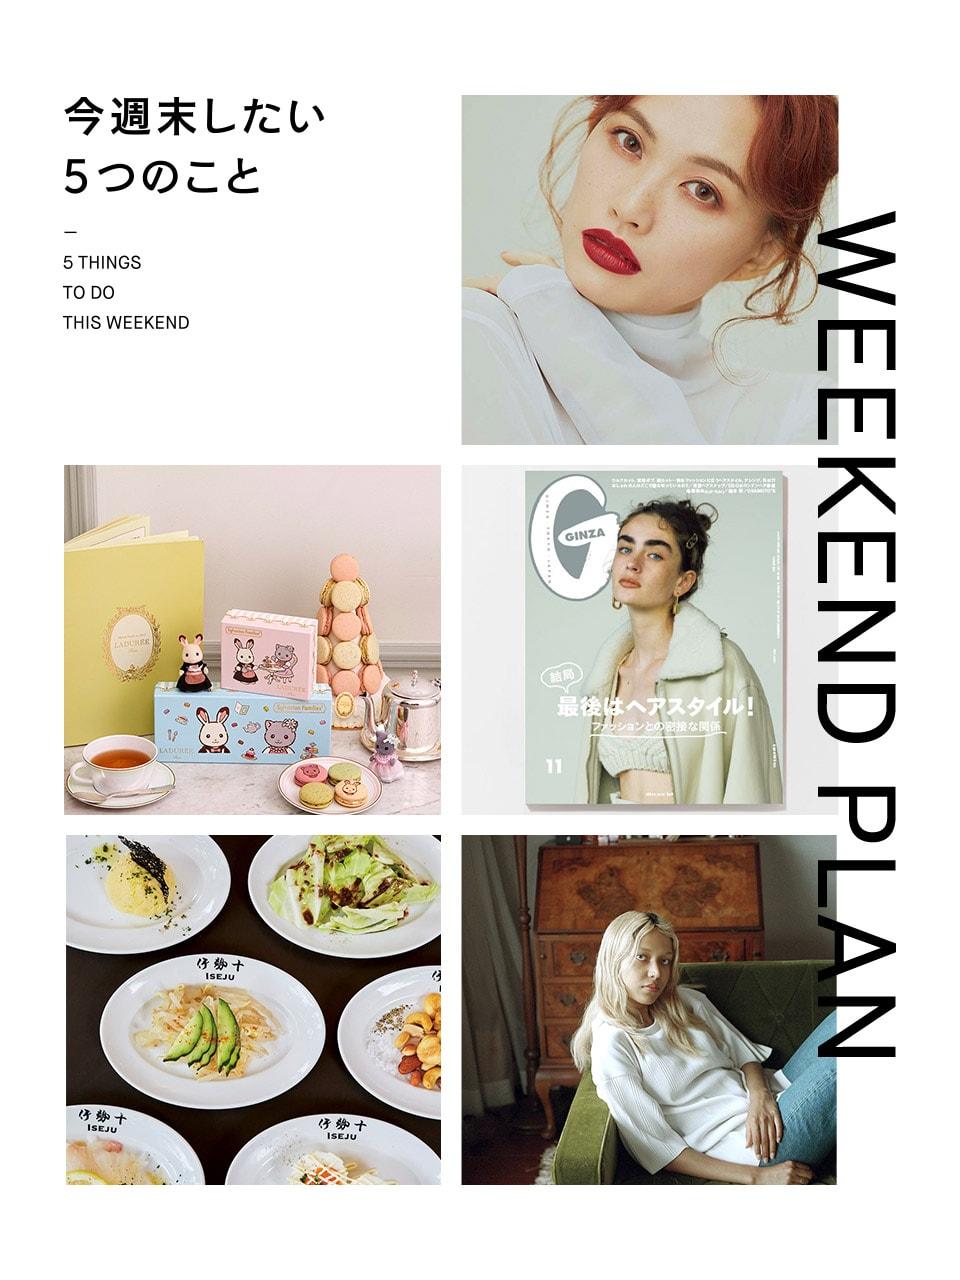 臼田あさ美さんと韓国メイクを研究、やりたいヘアスタイルを探す…etc.今週末したい5つのこと